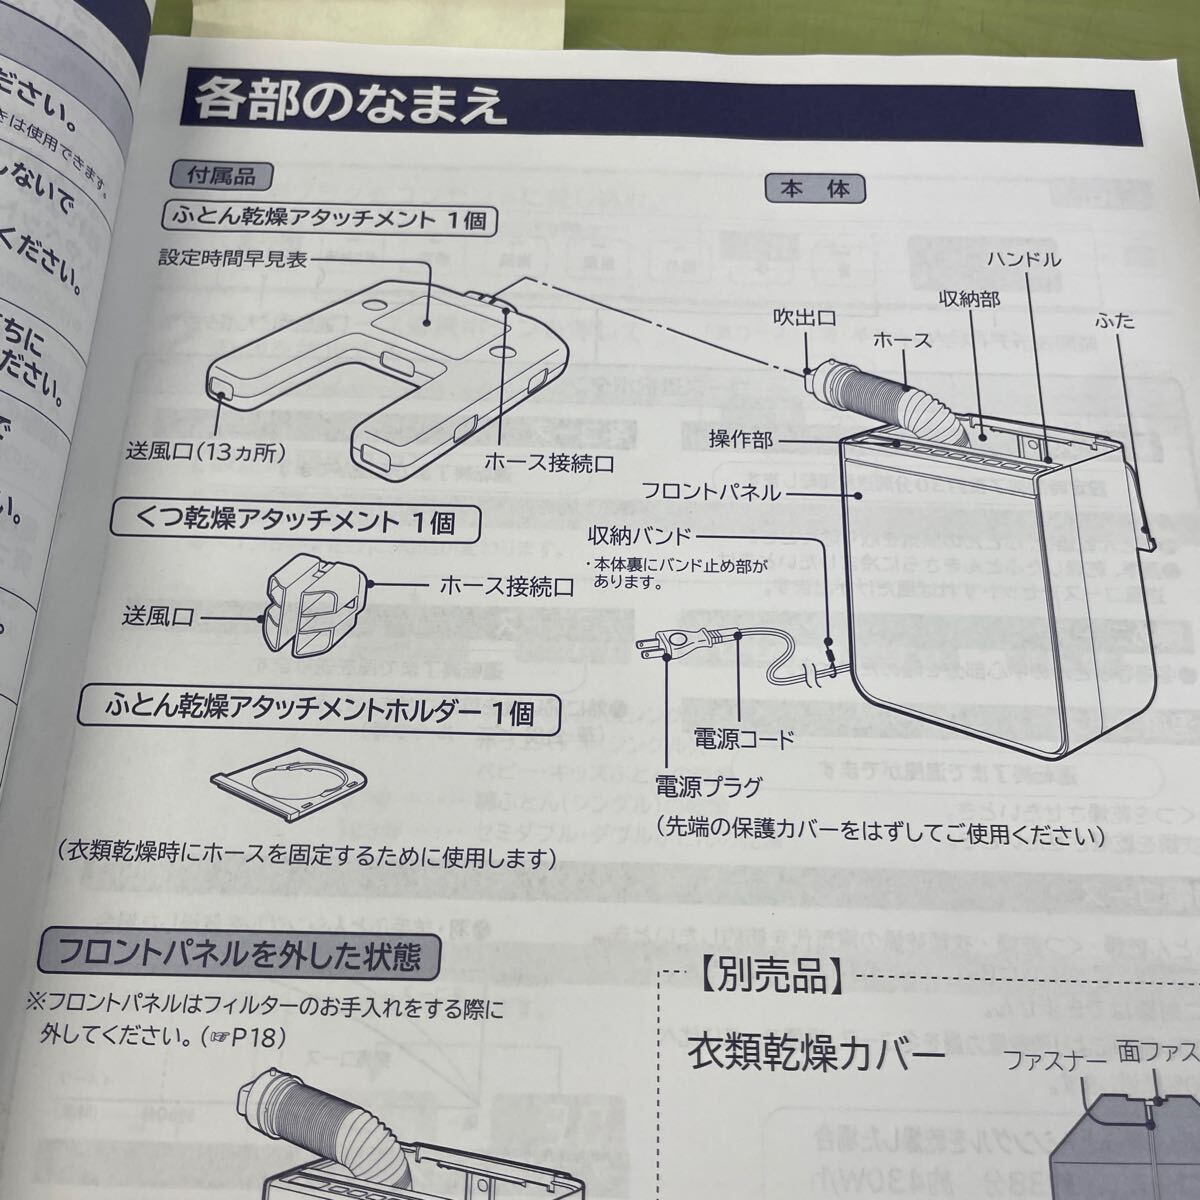 *HITACHI Hitachi futon сушильная машина модель HFK-V330 не использовался товар 